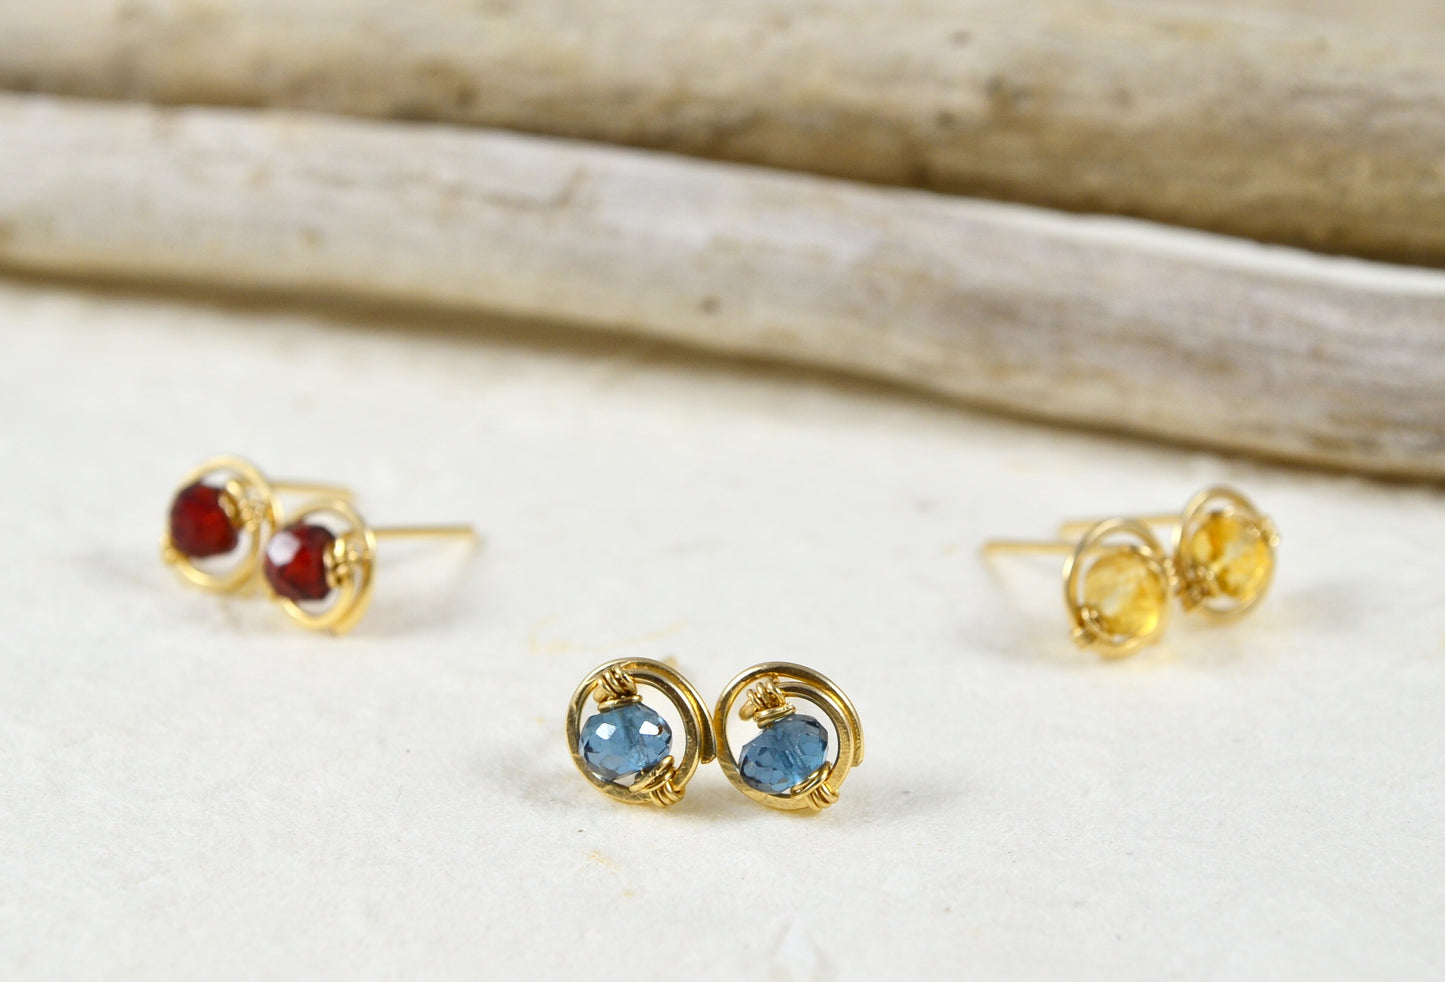 London Blue Topaz Gemstone Stud earrings in Sterling Silver or 14k Gold Filled